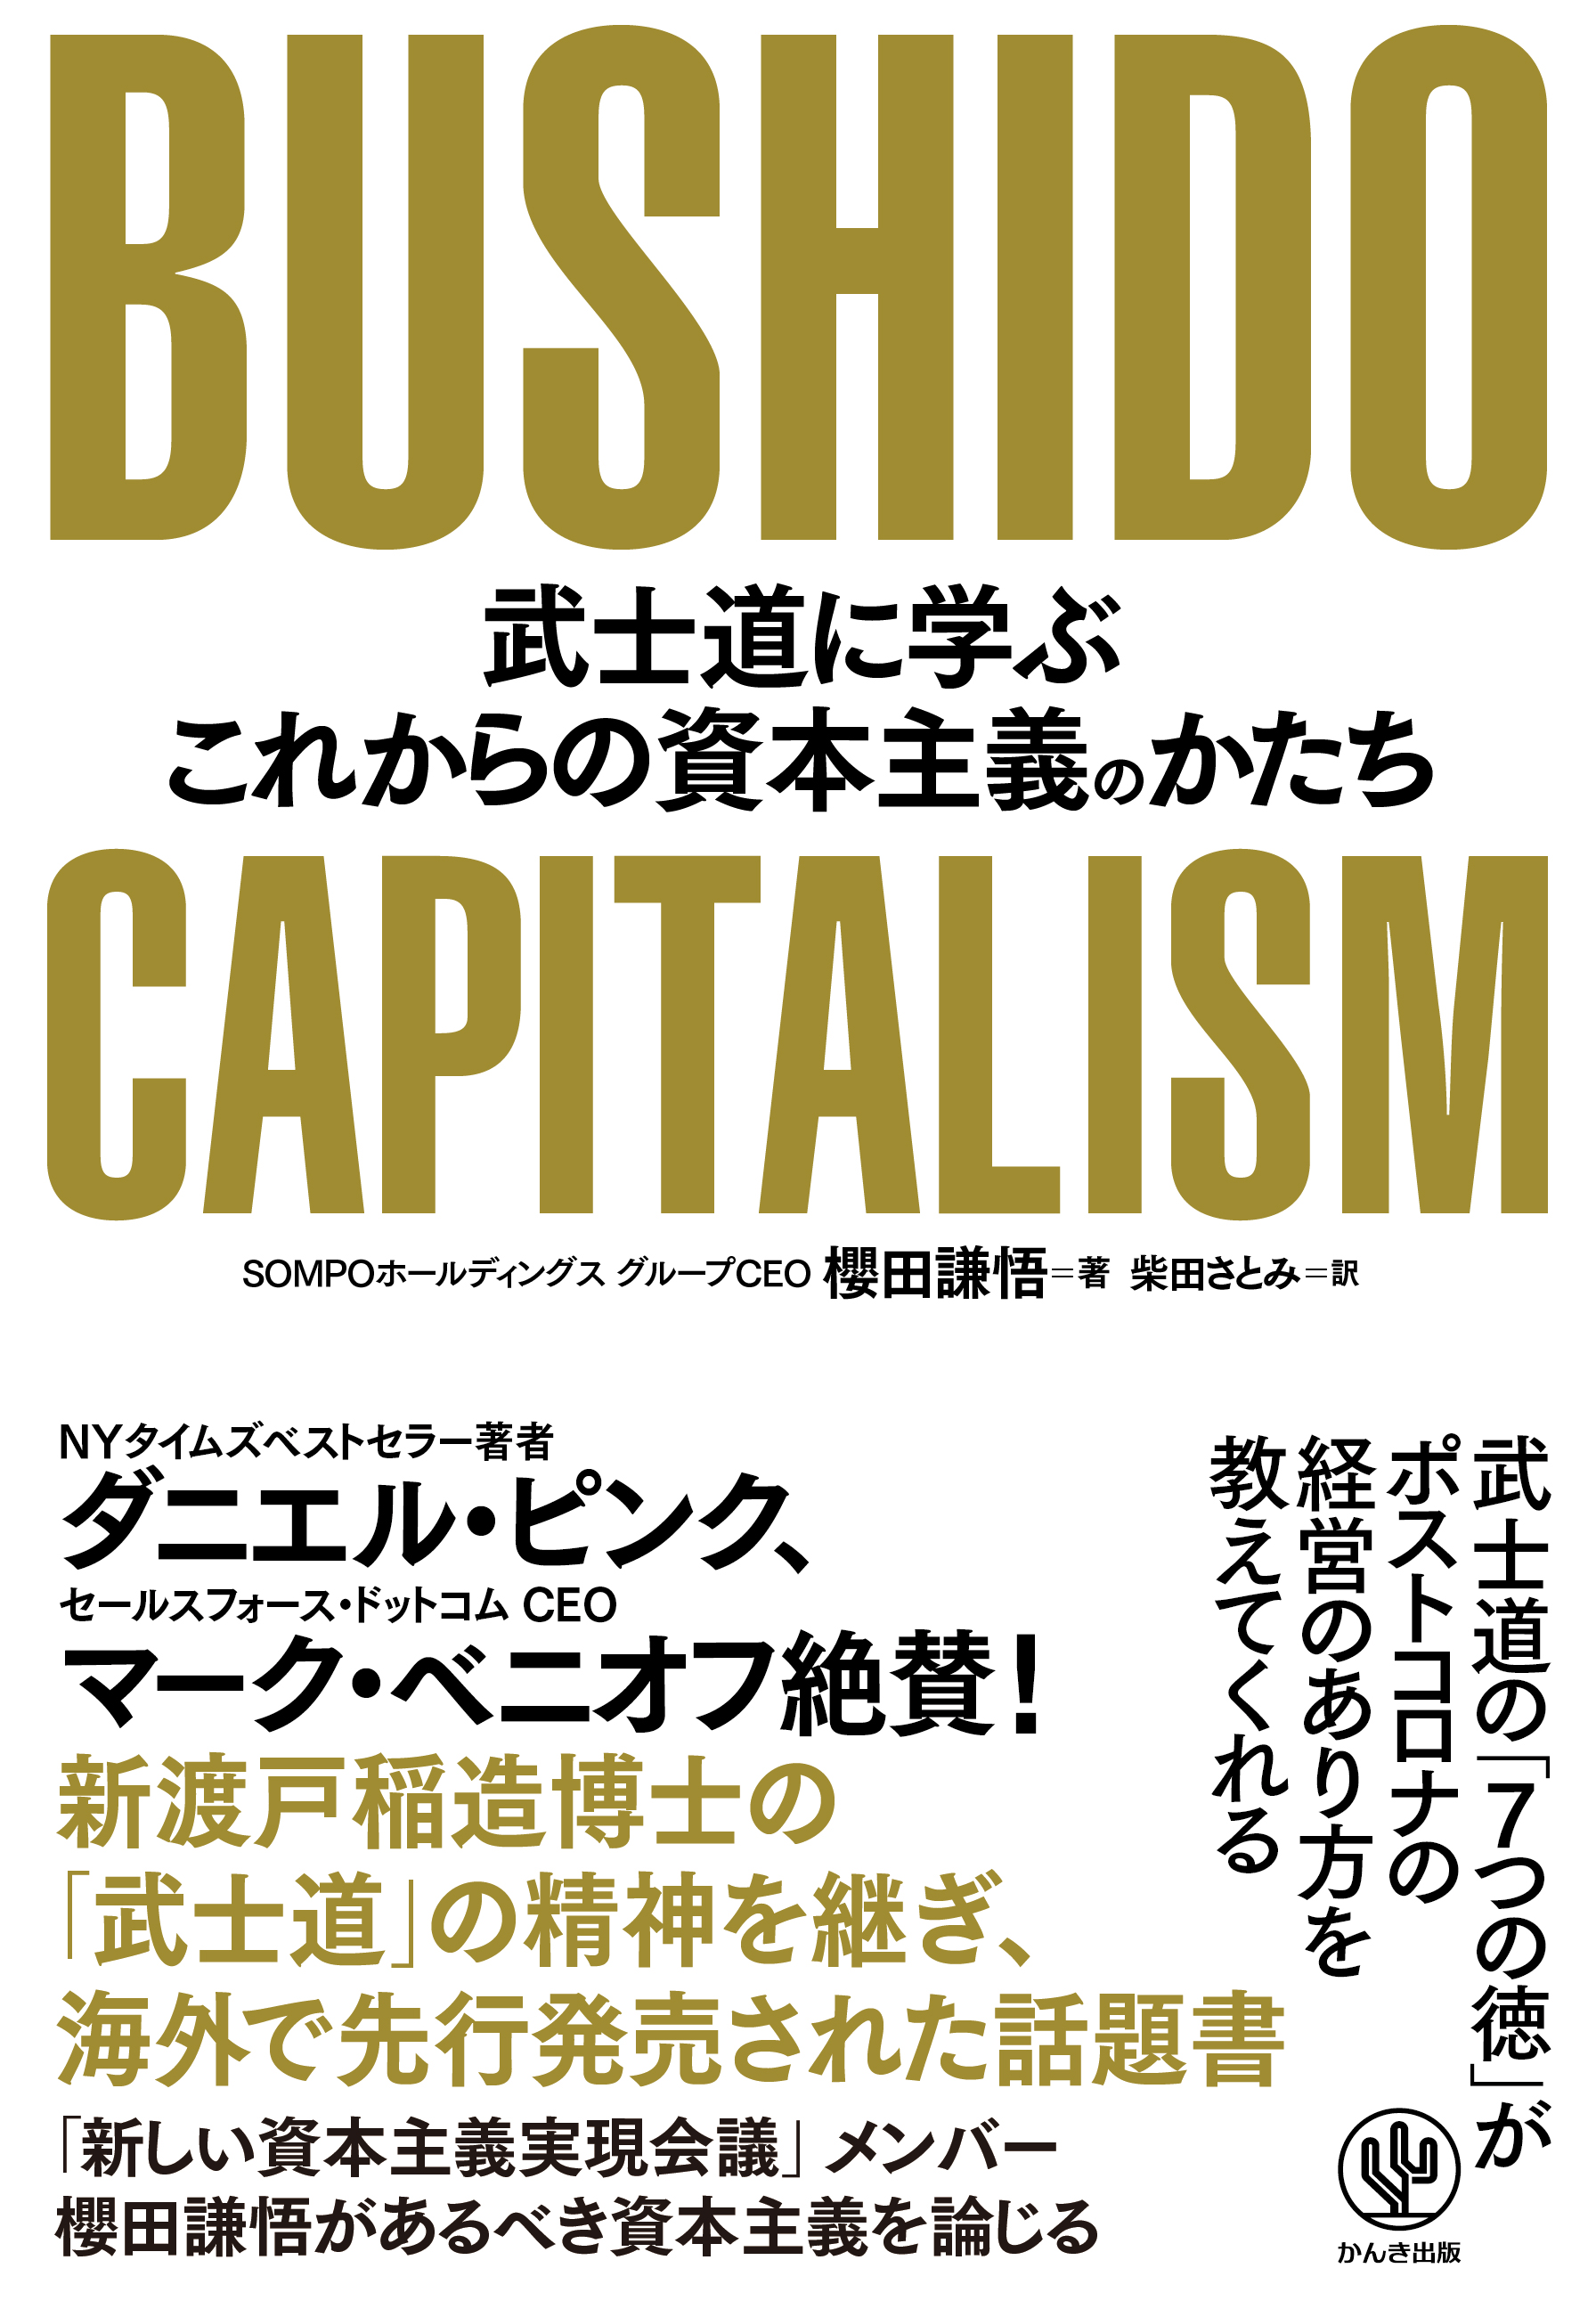 現代人のための“武士道精神”を説き、海外で話題を呼んだ書が早くも日本上陸。ポストコロナの中で持続可能な社会を実現するために“あるべき企業の姿”を教えてくれる、時代をリードする一冊